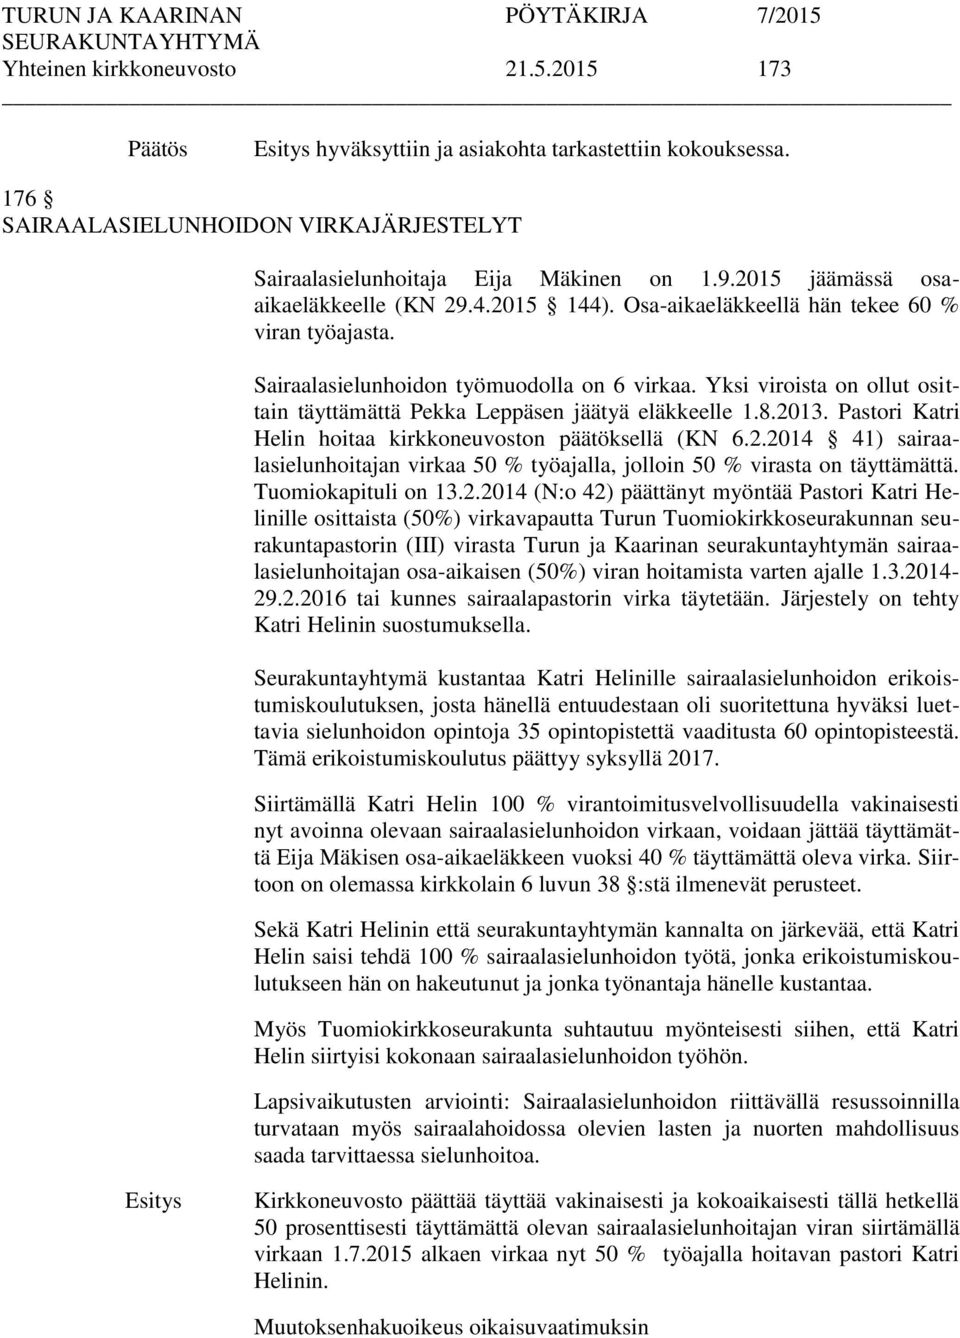 Yksi viroista on ollut osittain täyttämättä Pekka Leppäsen jäätyä eläkkeelle 1.8.2013. Pastori Katri Helin hoitaa kirkkoneuvoston päätöksellä (KN 6.2.2014 41) sairaalasielunhoitajan virkaa 50 % työajalla, jolloin 50 % virasta on täyttämättä.